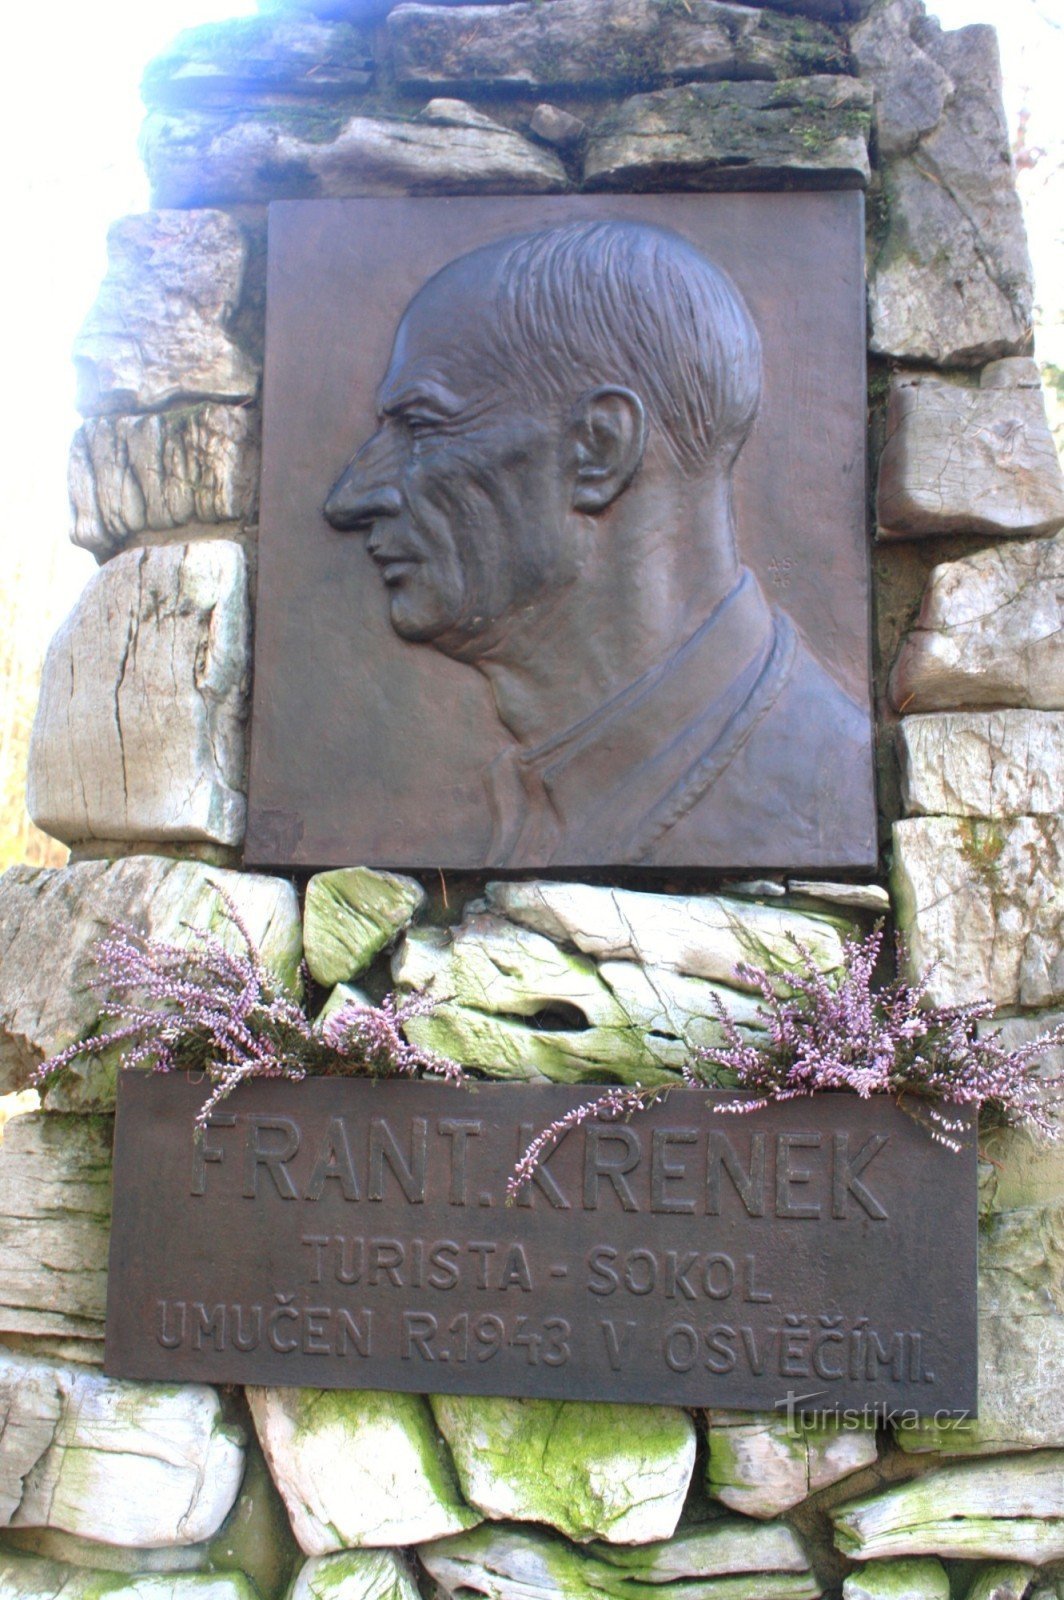 Le monument de Křenk